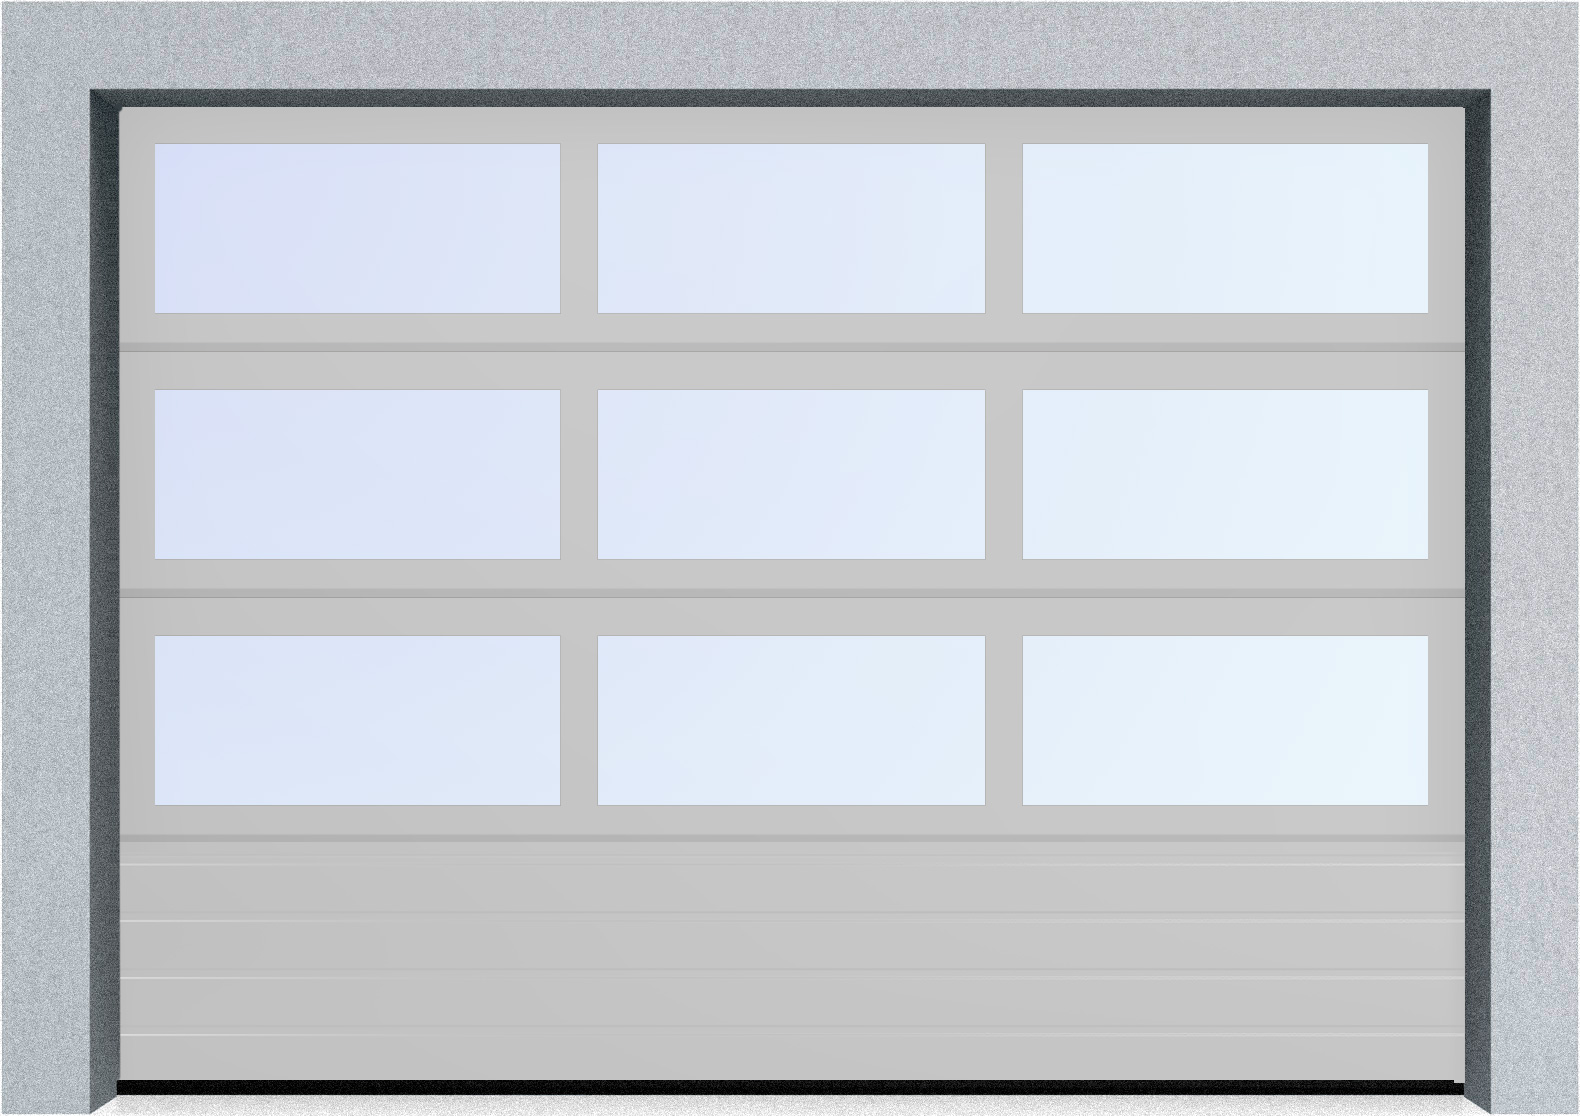  Автоматические секционные панорамные ворота серии AluTrend с комбинированным типом полотна (АЛПС) 6500х4500 S-гофр, Микроволна стандартные цвета, фото 16 